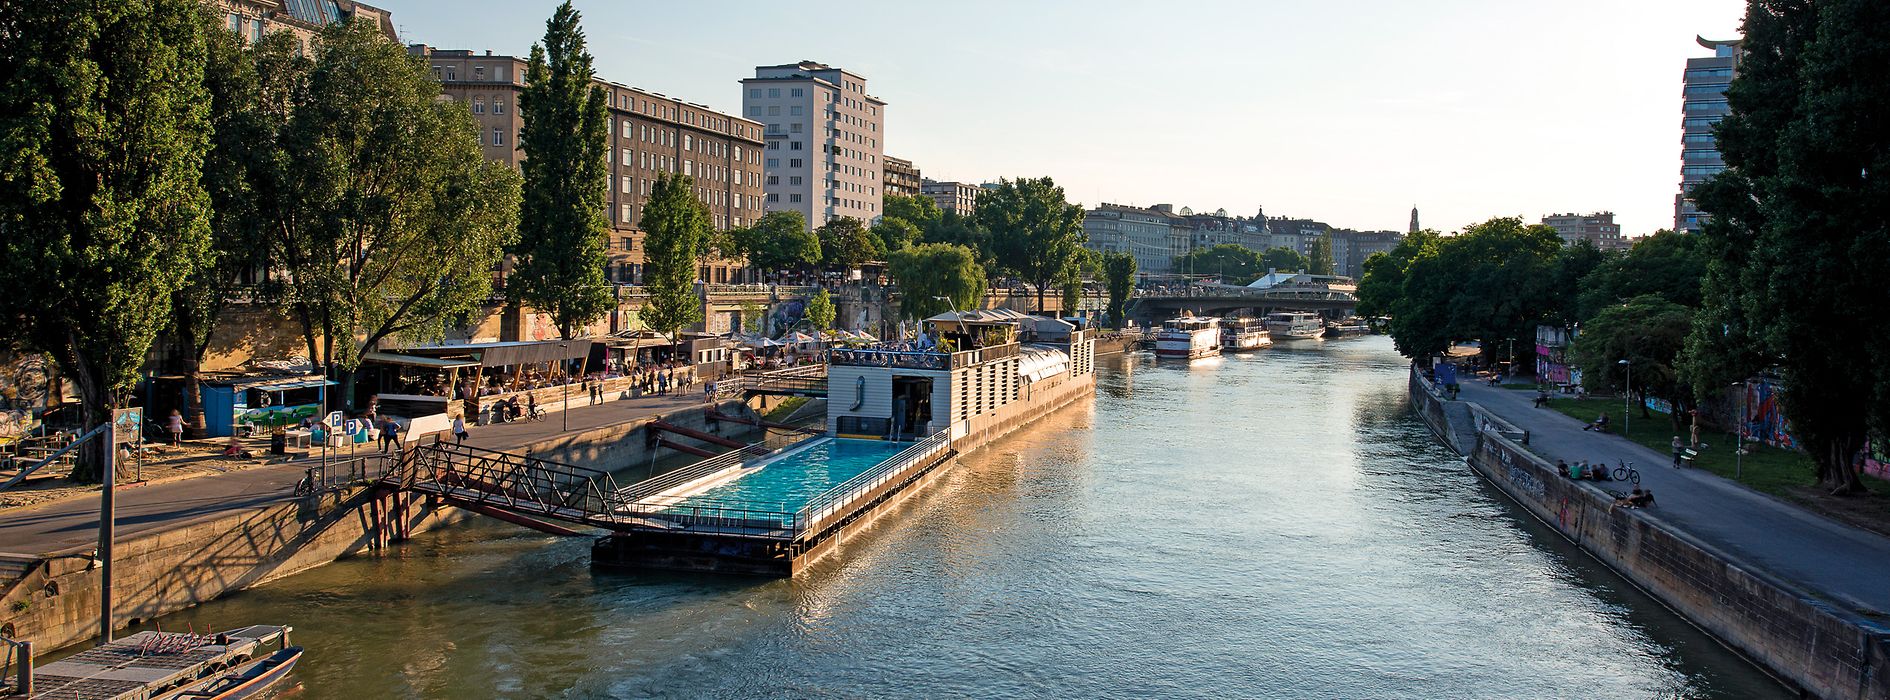 Barco piscina diurno en el canal del Danubio